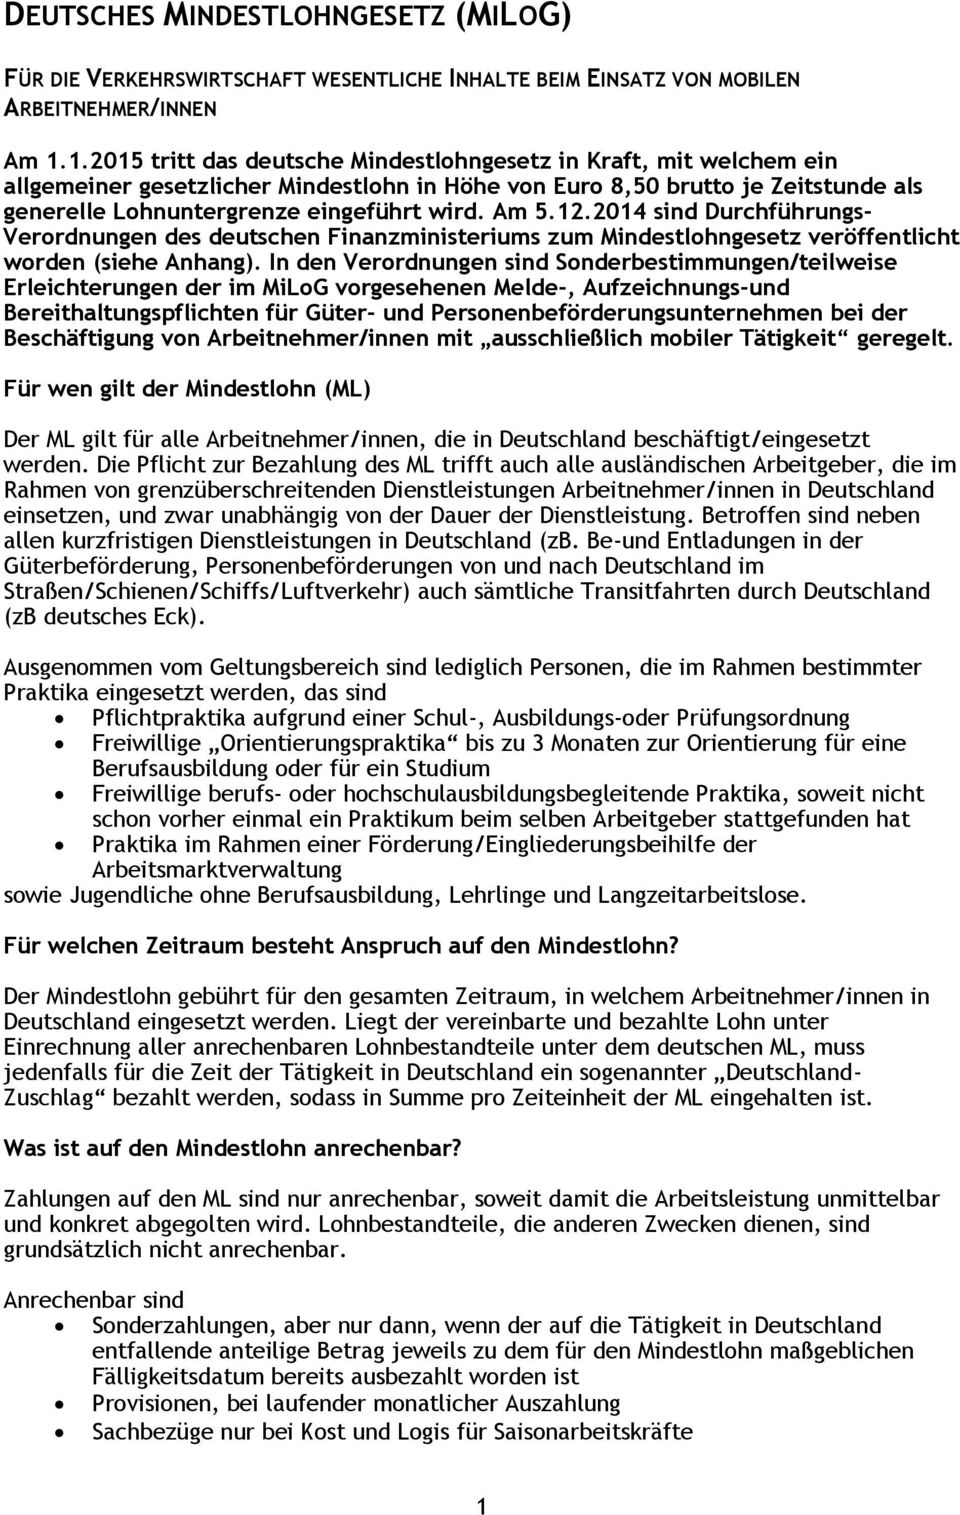 Am 5.12.2014 sind Durchführungs- Verordnungen des deutschen Finanzministeriums zum Mindestlohngesetz veröffentlicht worden (siehe Anhang).